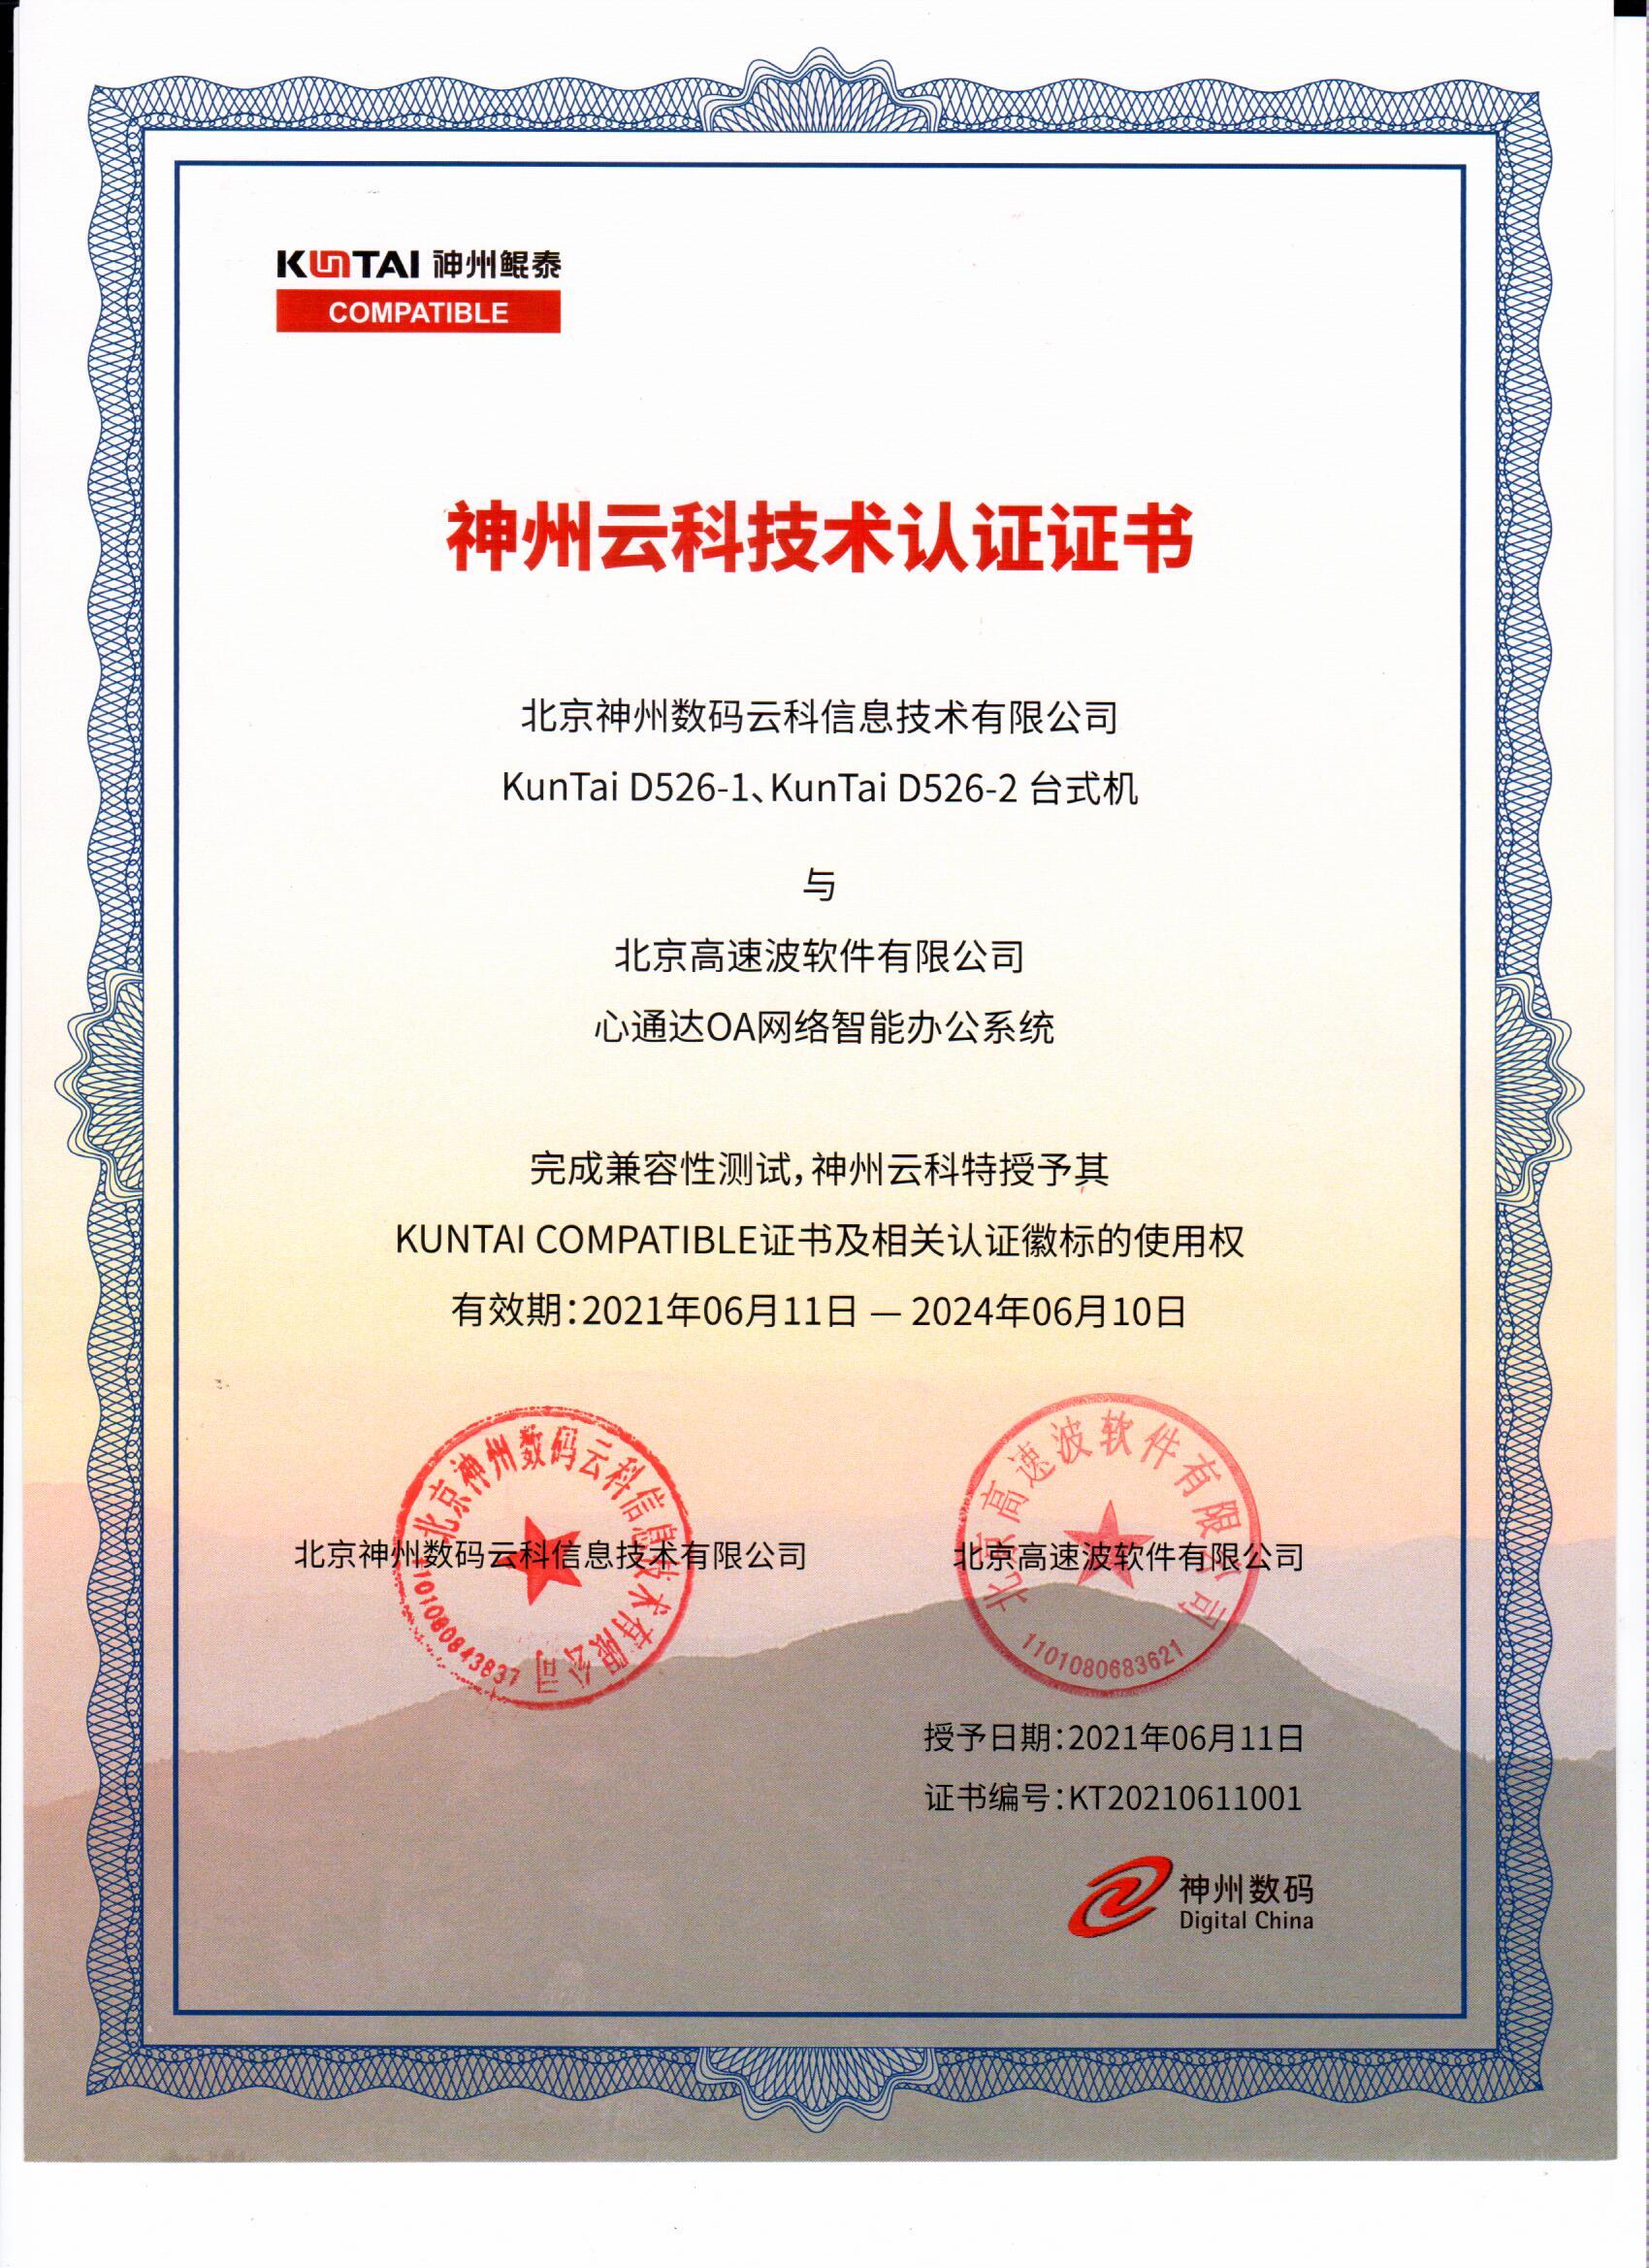 北京神州数码云科信息技术有限公司兼容互认证明